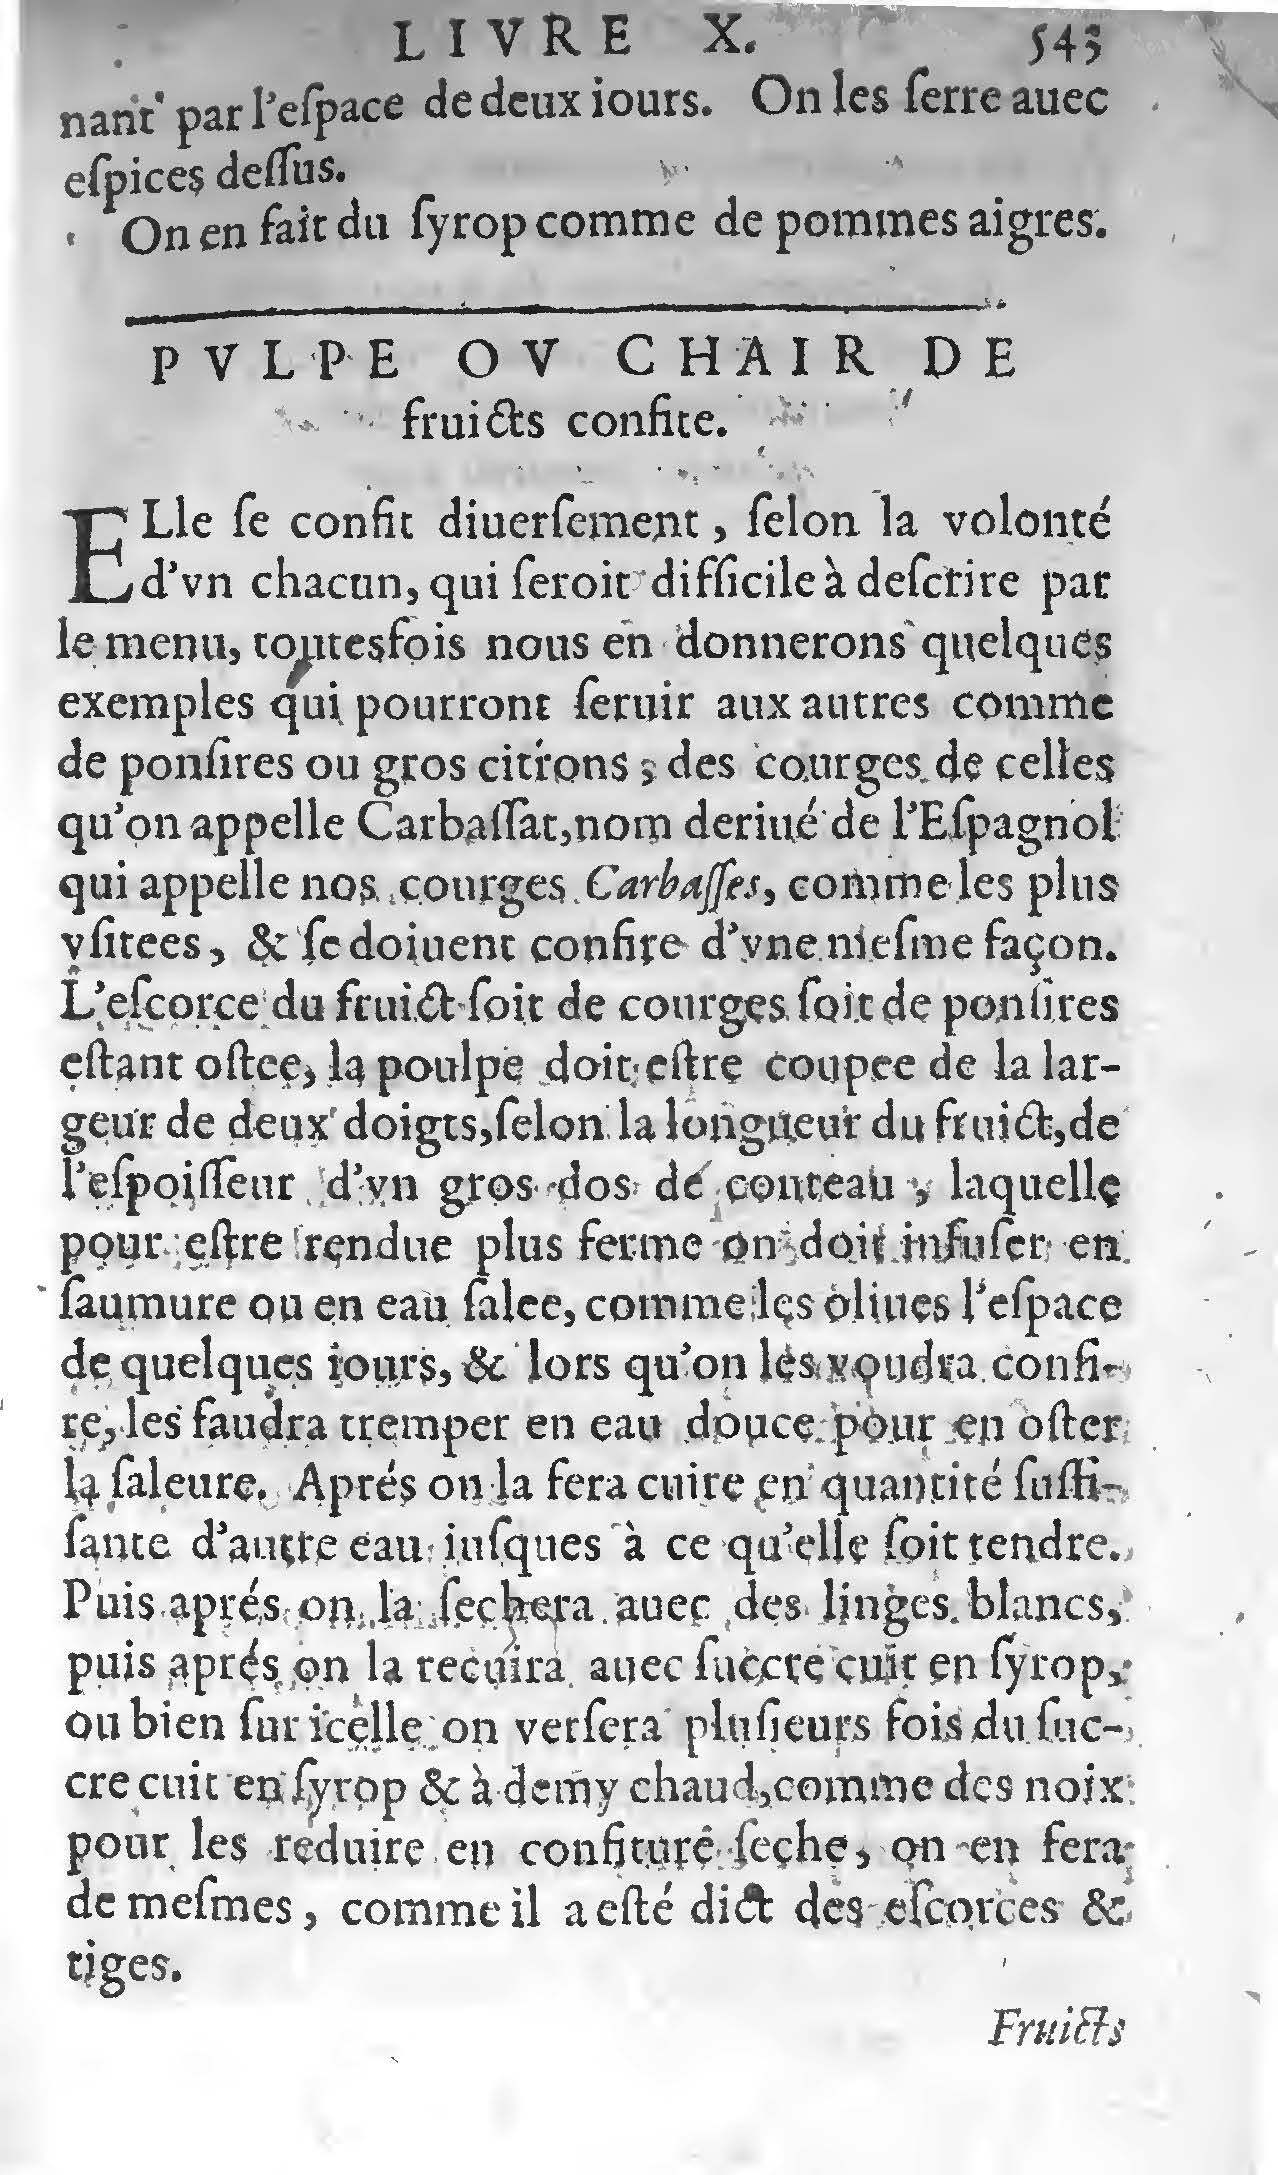 1607 Étienne Servain et Jean Antoine Huguetan - Trésor de santé ou ménage de la vie humaine - BIU Santé_Page_563.jpg